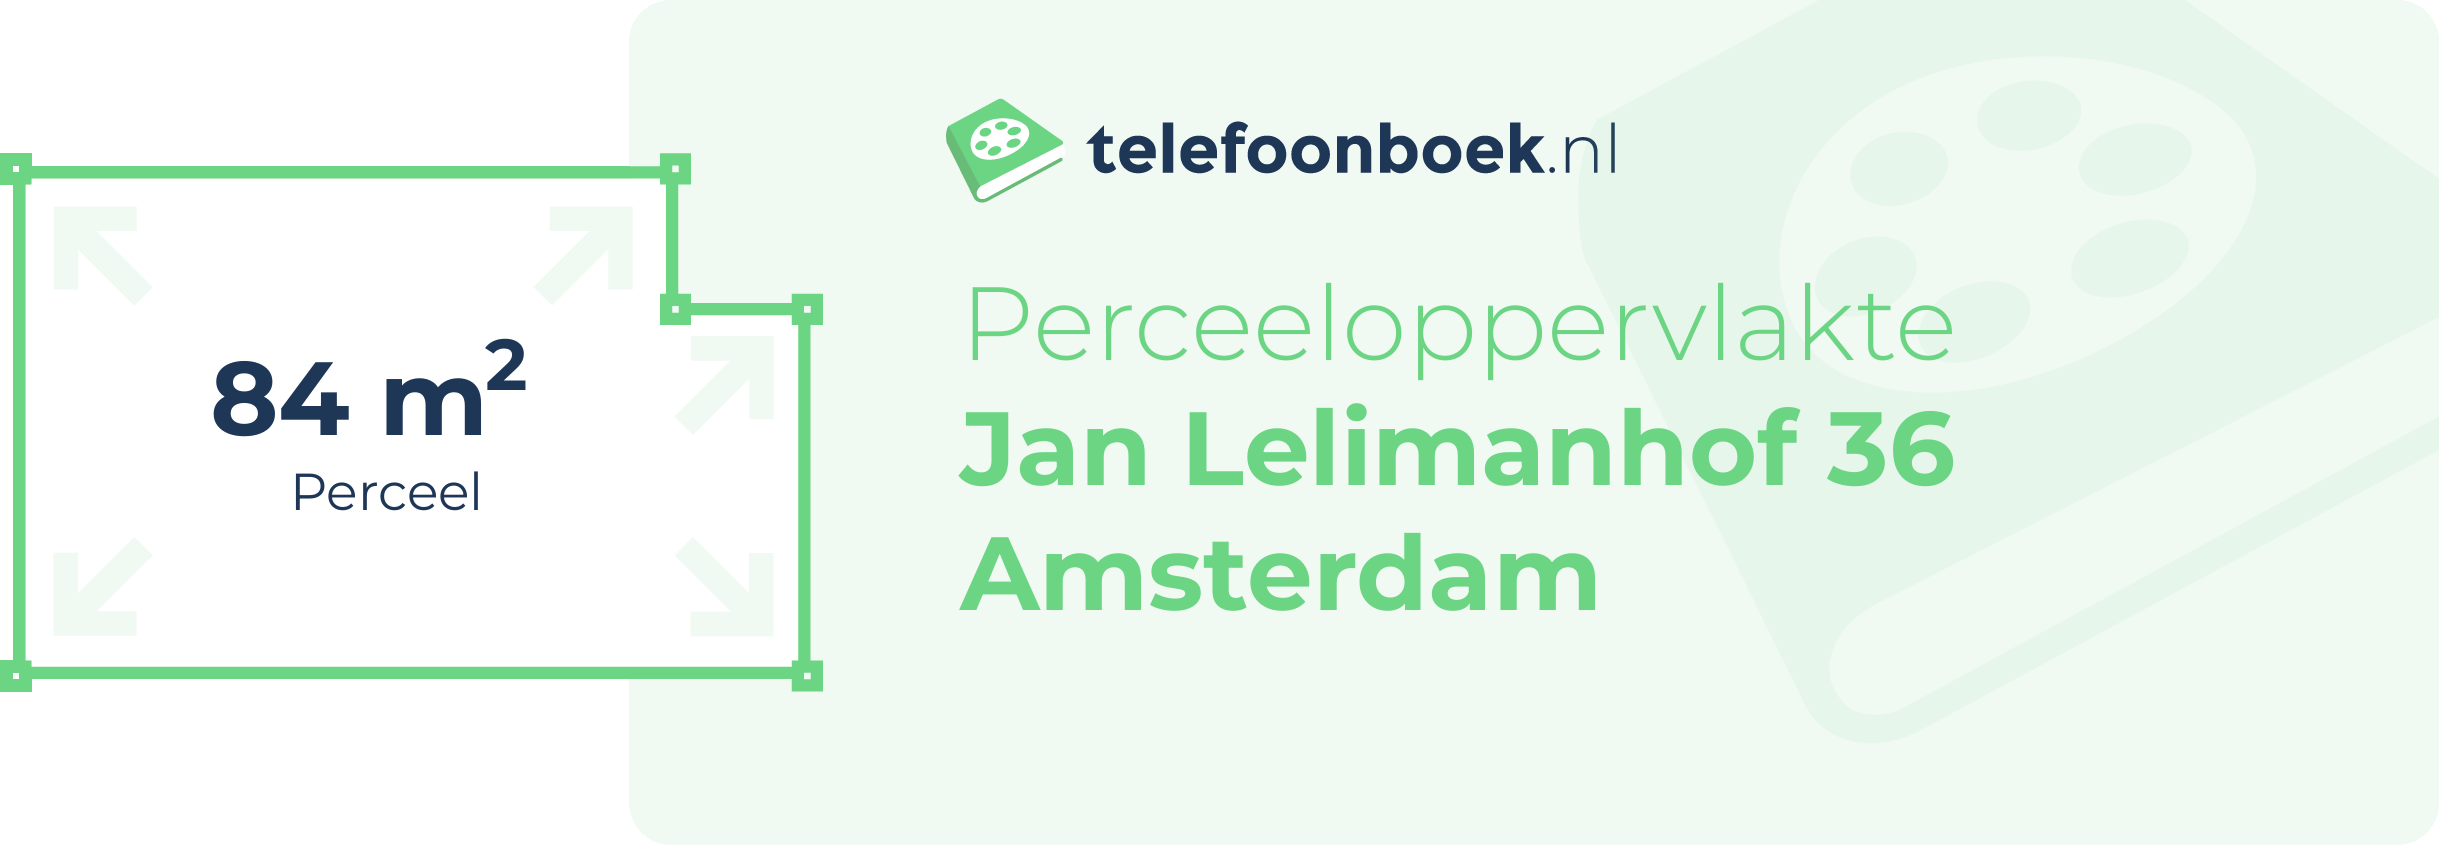 Perceeloppervlakte Jan Lelimanhof 36 Amsterdam